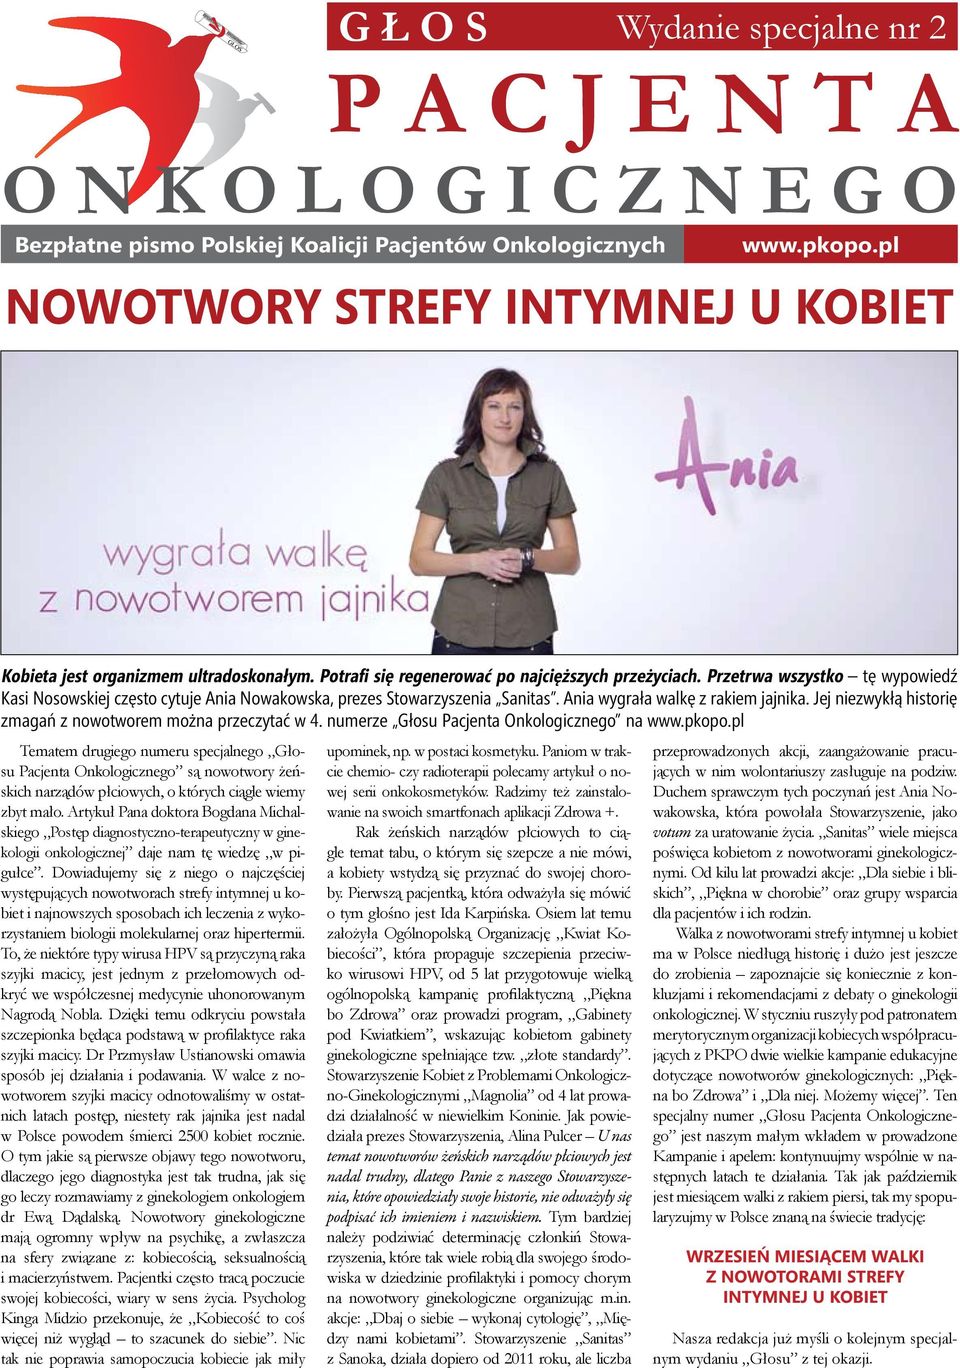 Przetrwa wszystko tę wypowiedź Kasi Nosowskiej często cytuje Ania Nowakowska, prezes Stowarzyszenia Sanitas. Ania wygrała walkę z rakiem jajnika.